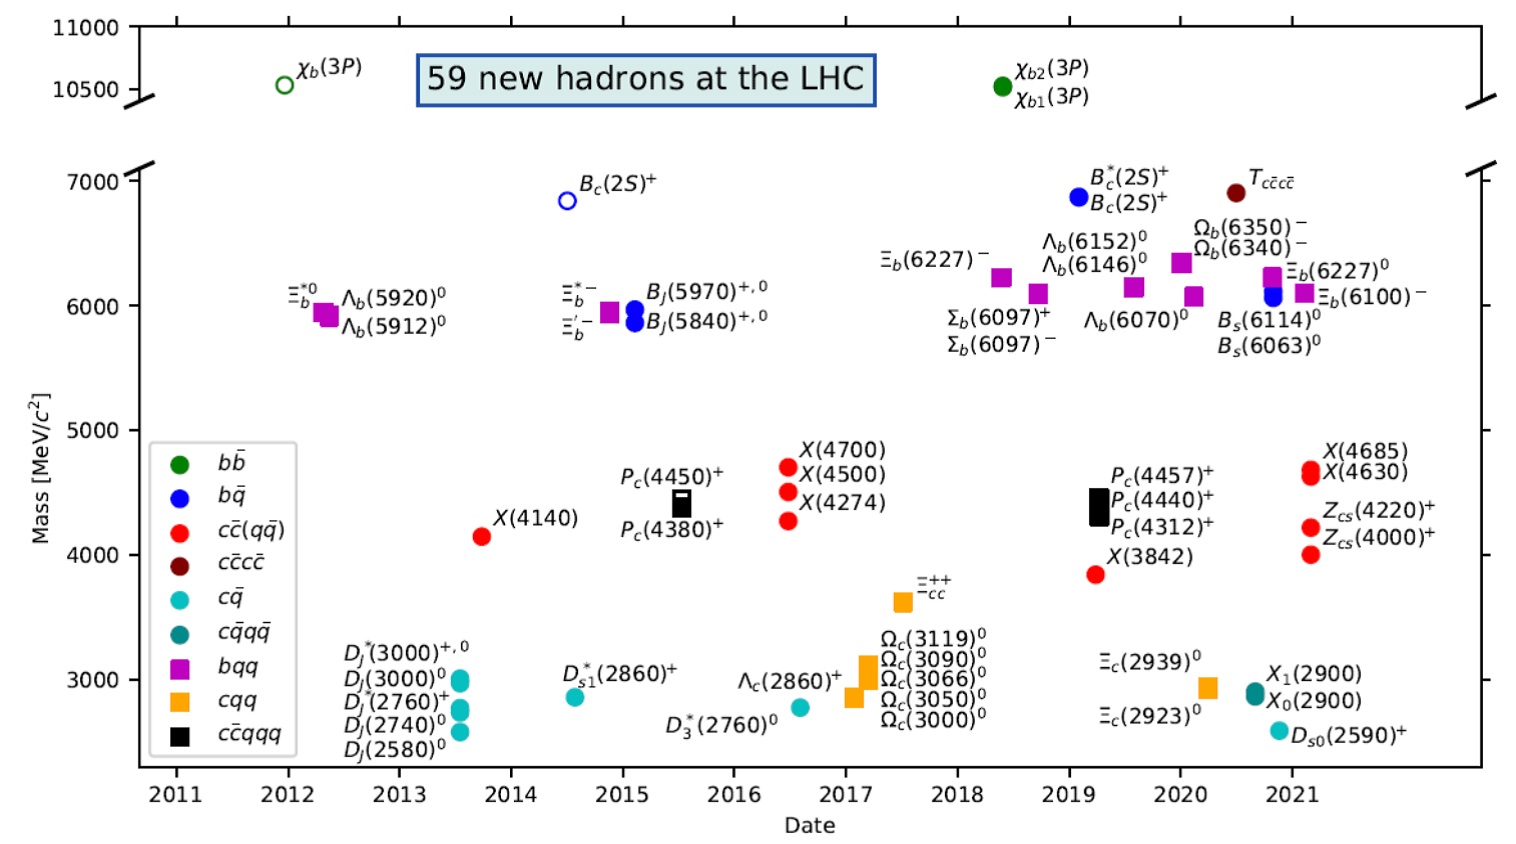 Pomocí LHC bylo objeveno za deset let činnosti LHC celkově už 59 hadronů obsahující těžké kvarky c a b (lehké kvarky u, d a s jsou označeny jako q). Kromě mesonů a baryonů se podařilo objevit i tetrakvarky a pentakvarky. (Zdroj prezentace S. Mitchell